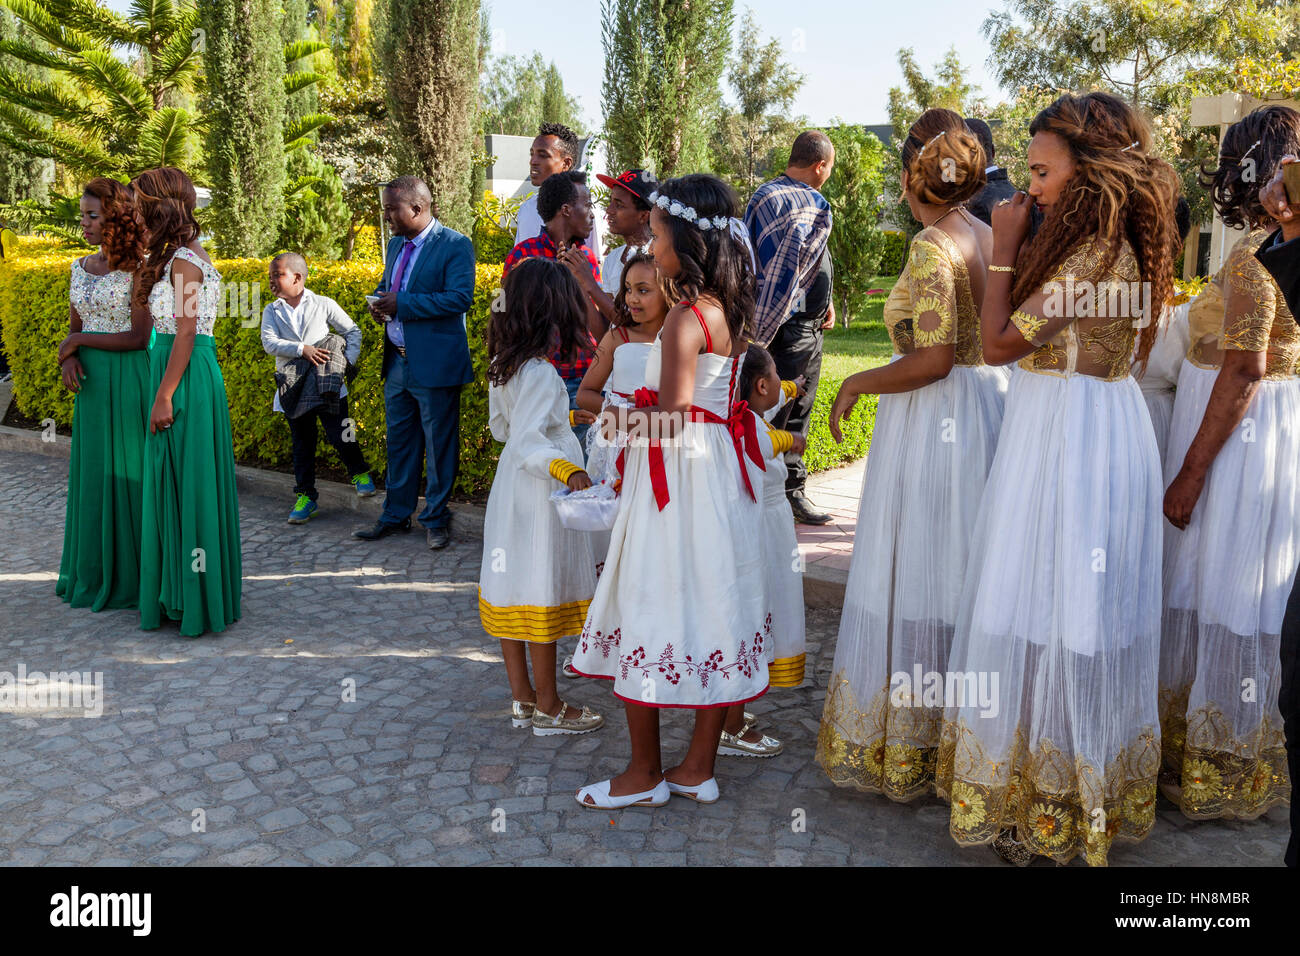 La fête de mariage, Demoiselles d'attendre l'arrivée de la mariée, lac Ziway, Ziway, Ethiopie Banque D'Images